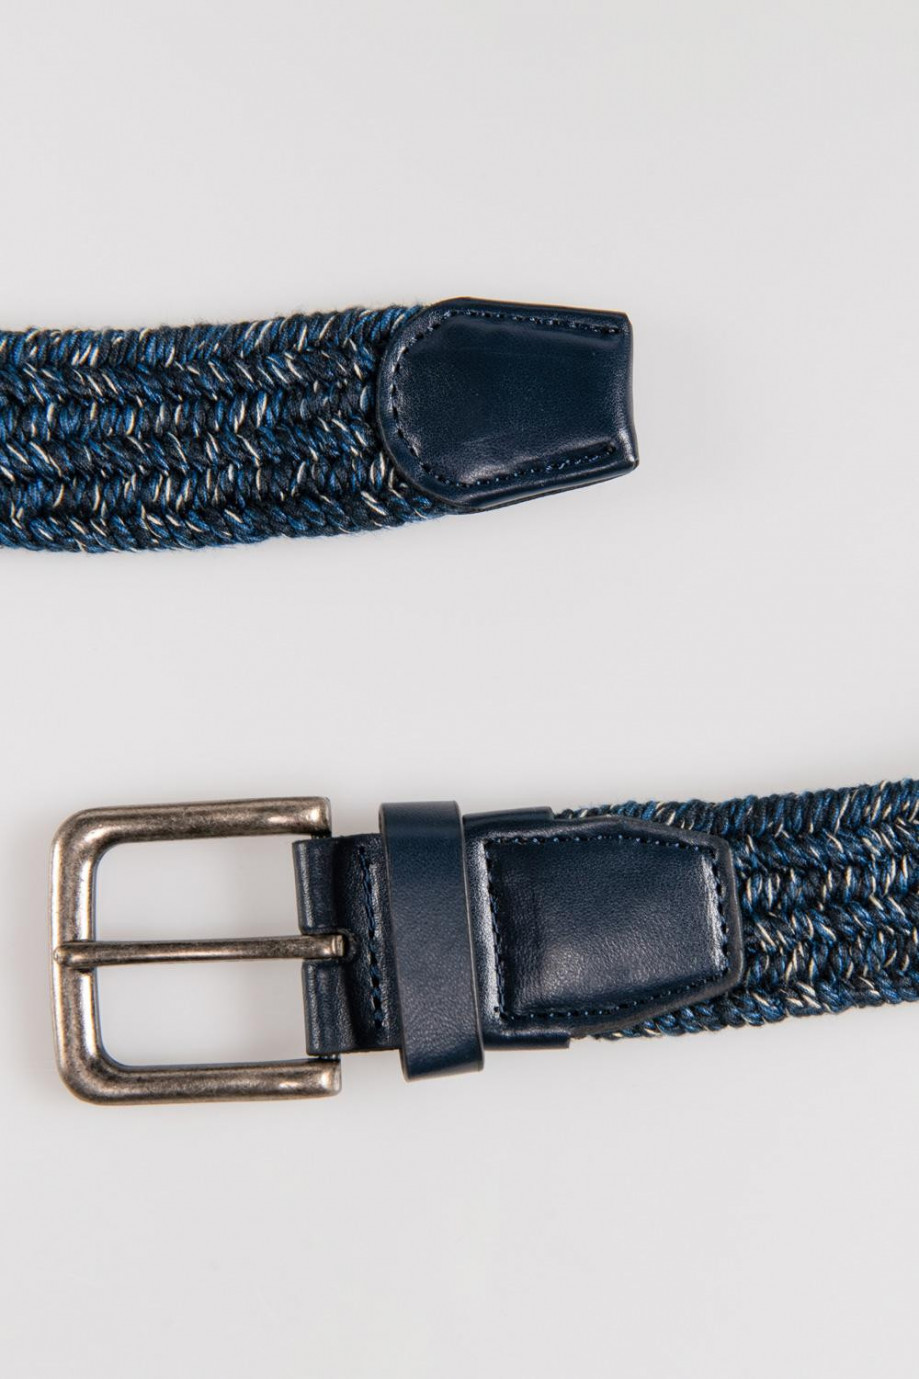 Cinturón trenzado textil, hebilla metálica